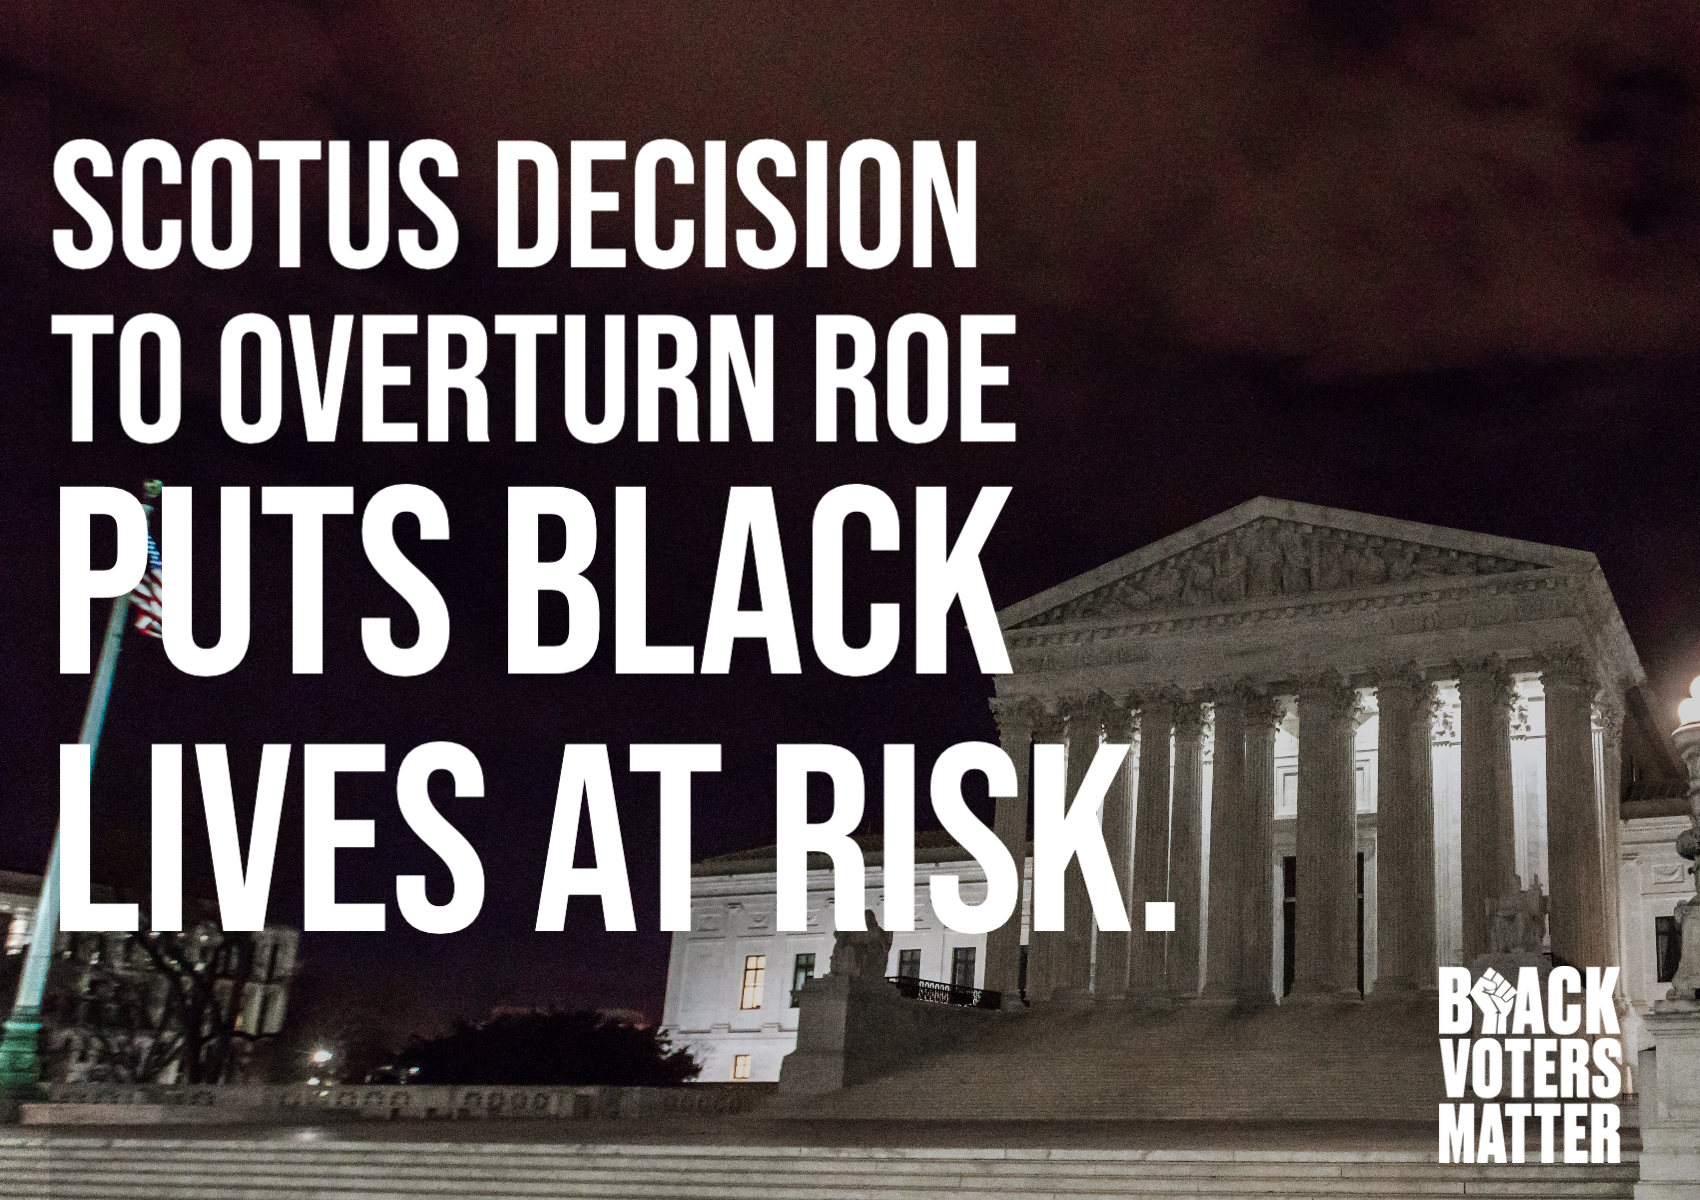 Black Voters Matter: SCOTUS Decision To Overturn Roe V. Wade Puts Black Lives At Risk